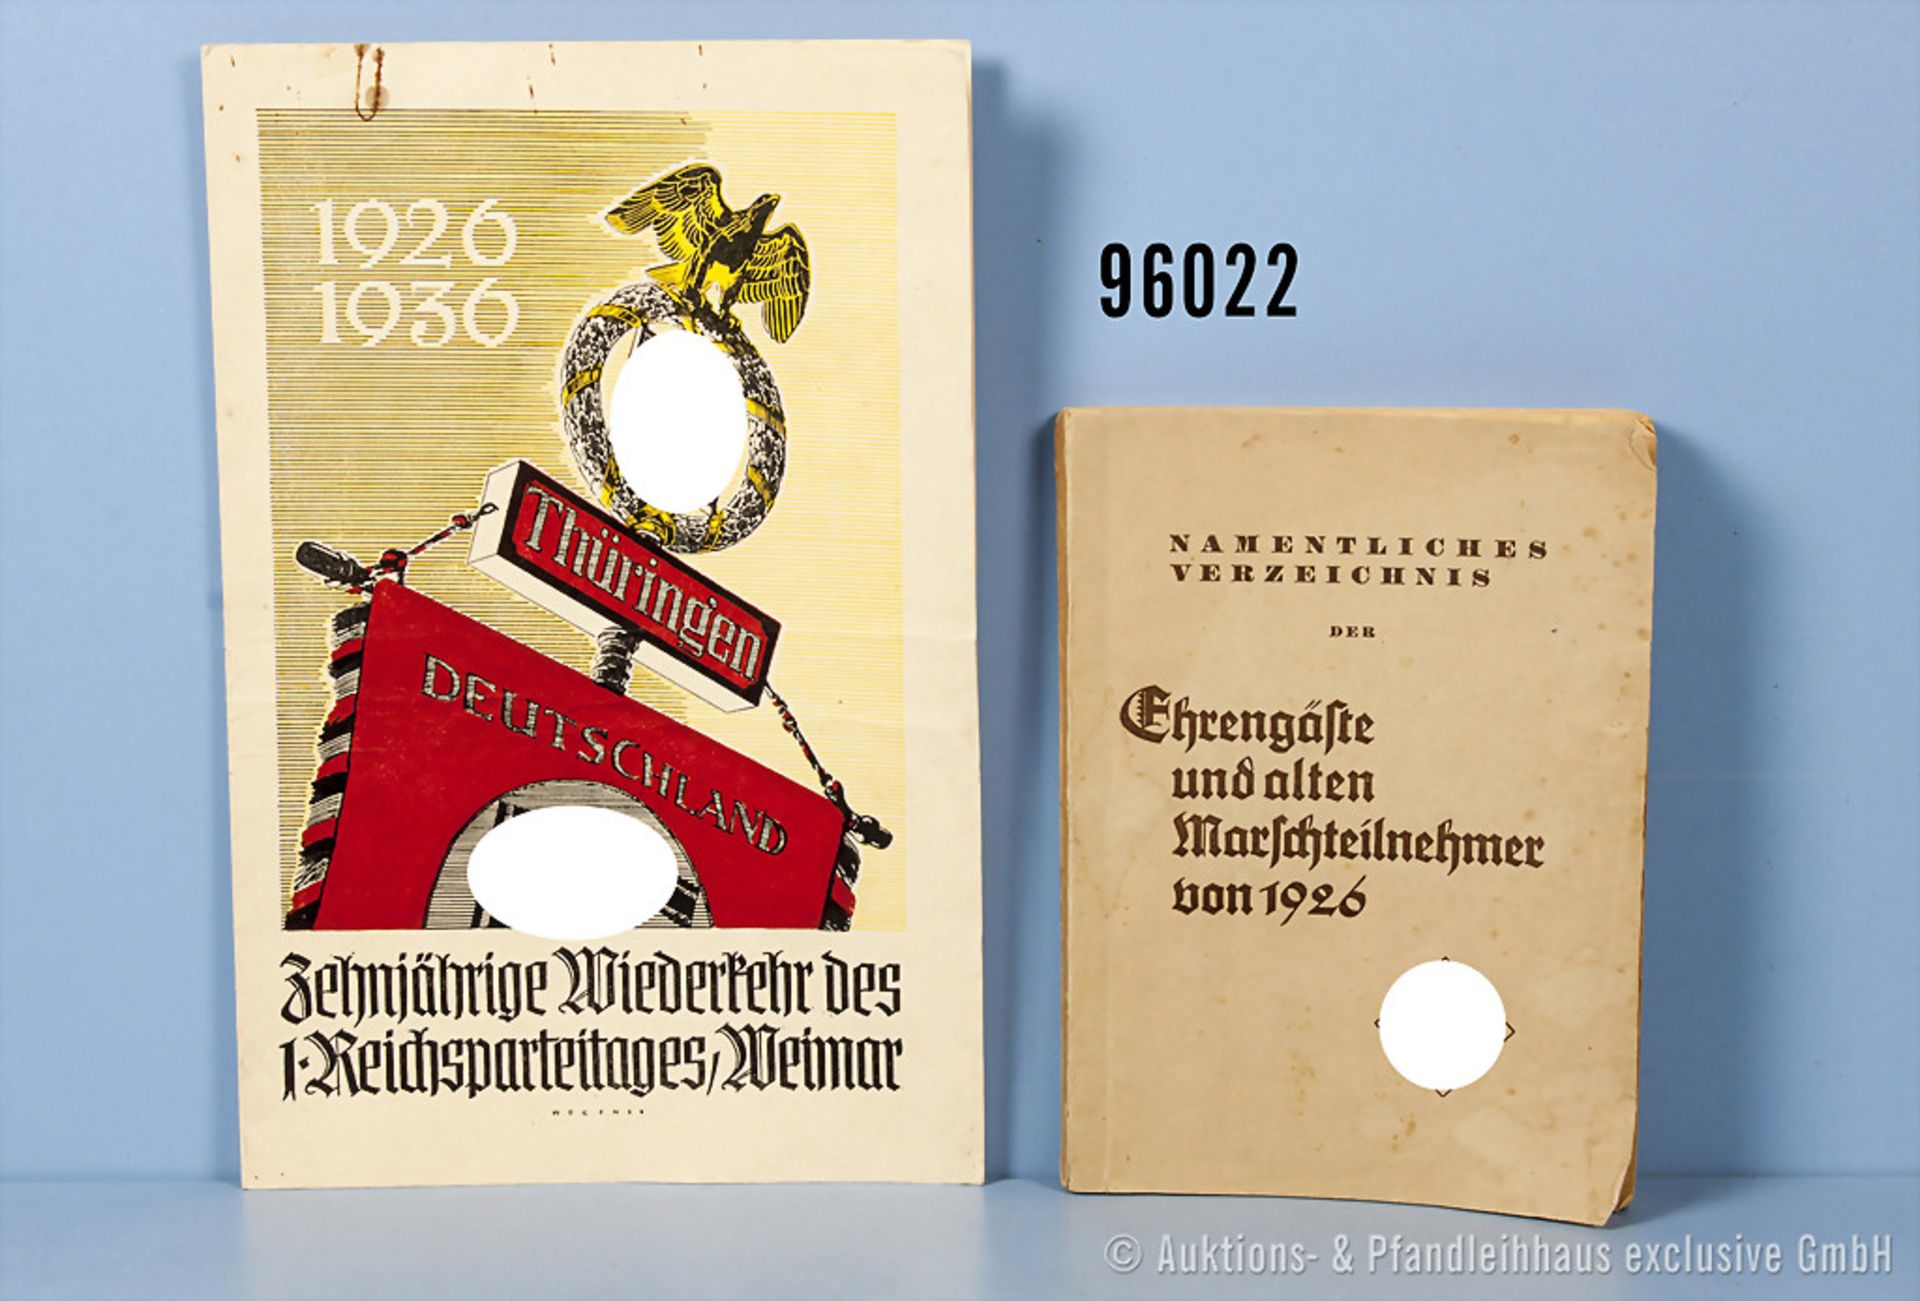 Konv. Broschüre "Amtliches Verzeichnis der Ehrengäste und alten Marschteilnehmer von 1926" sowie